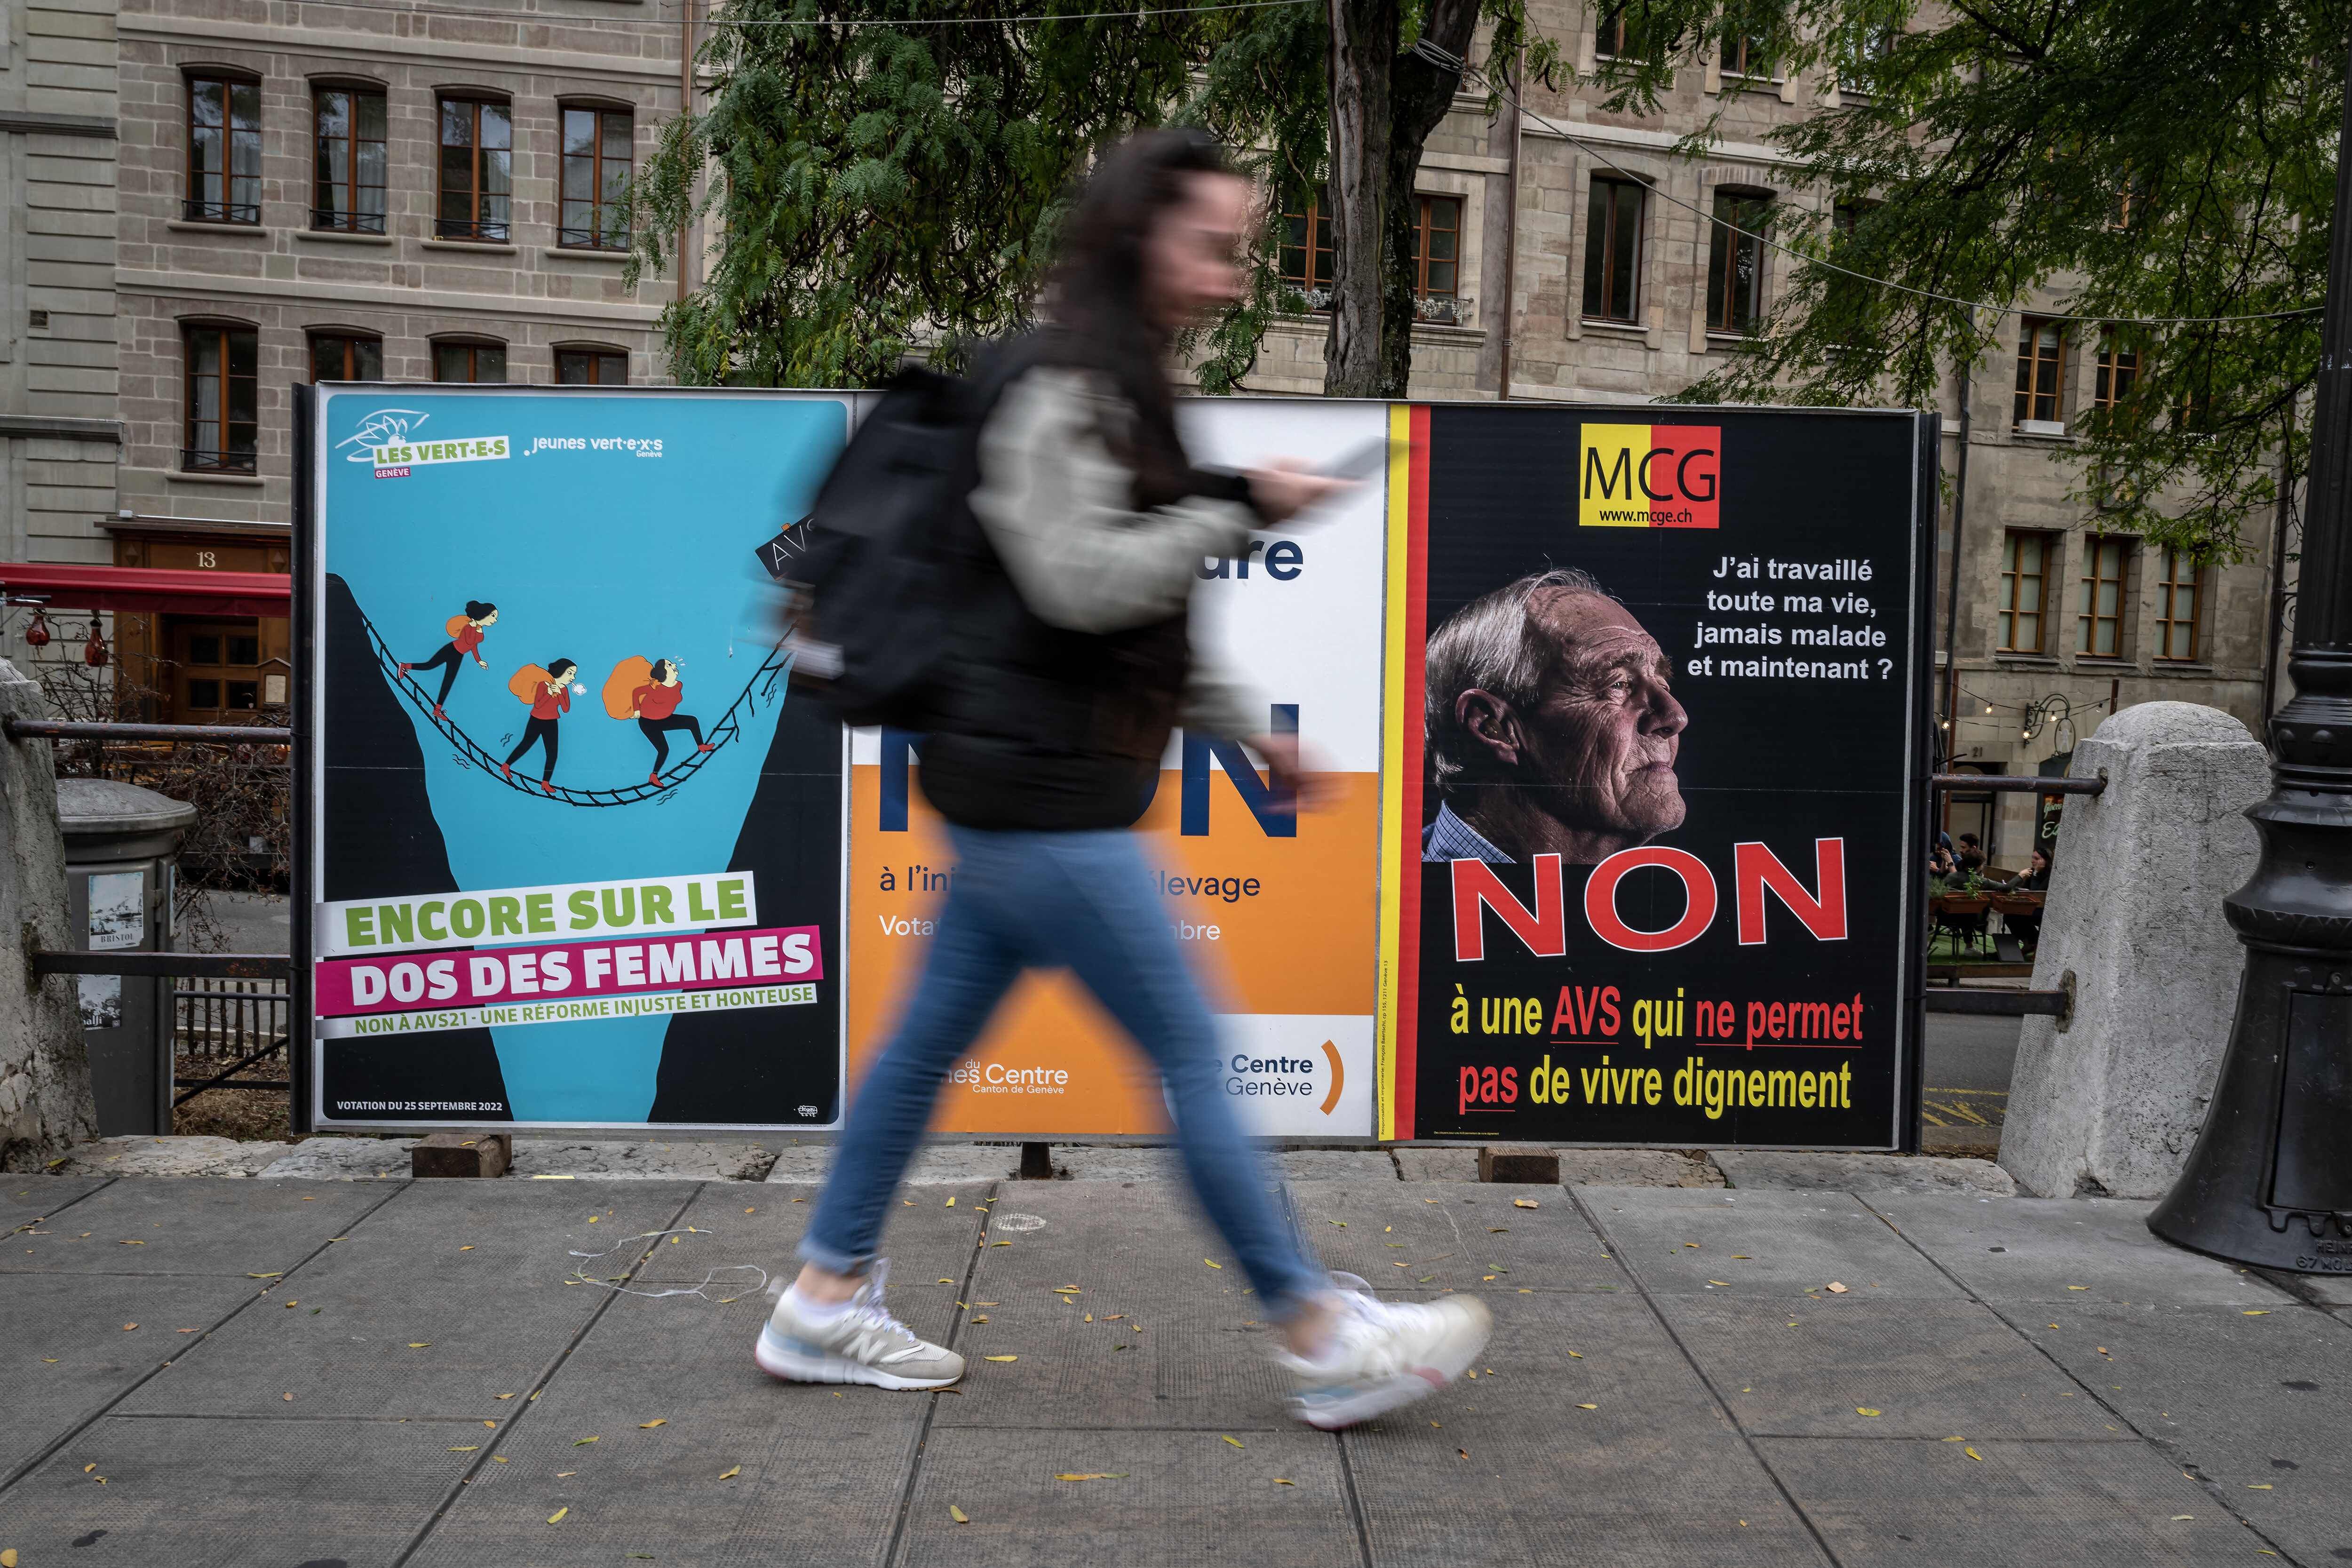 Carteles sobre el referendo llenaron las calles de Ginebra en los días previos. (Fabrice COFFRINI / AFP)